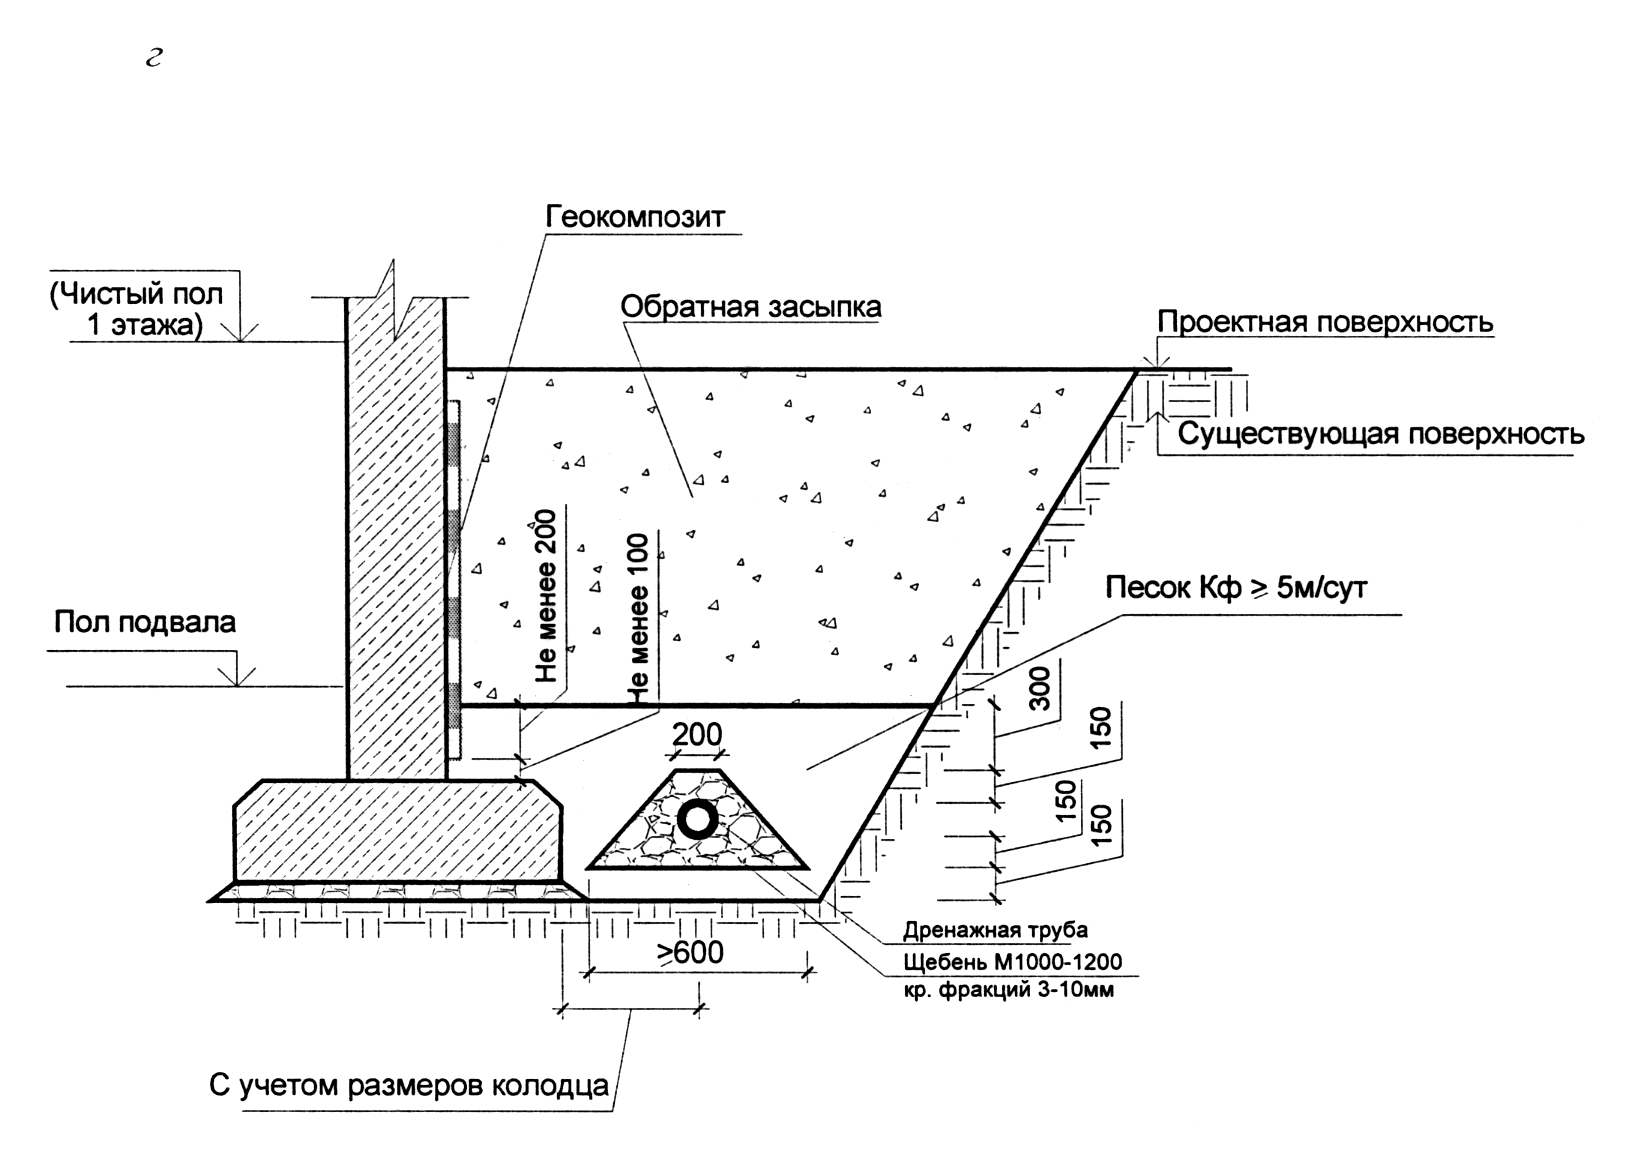 Отвод воды от фундамента дома - различные системы с пошаговыми демонстрациями их создания